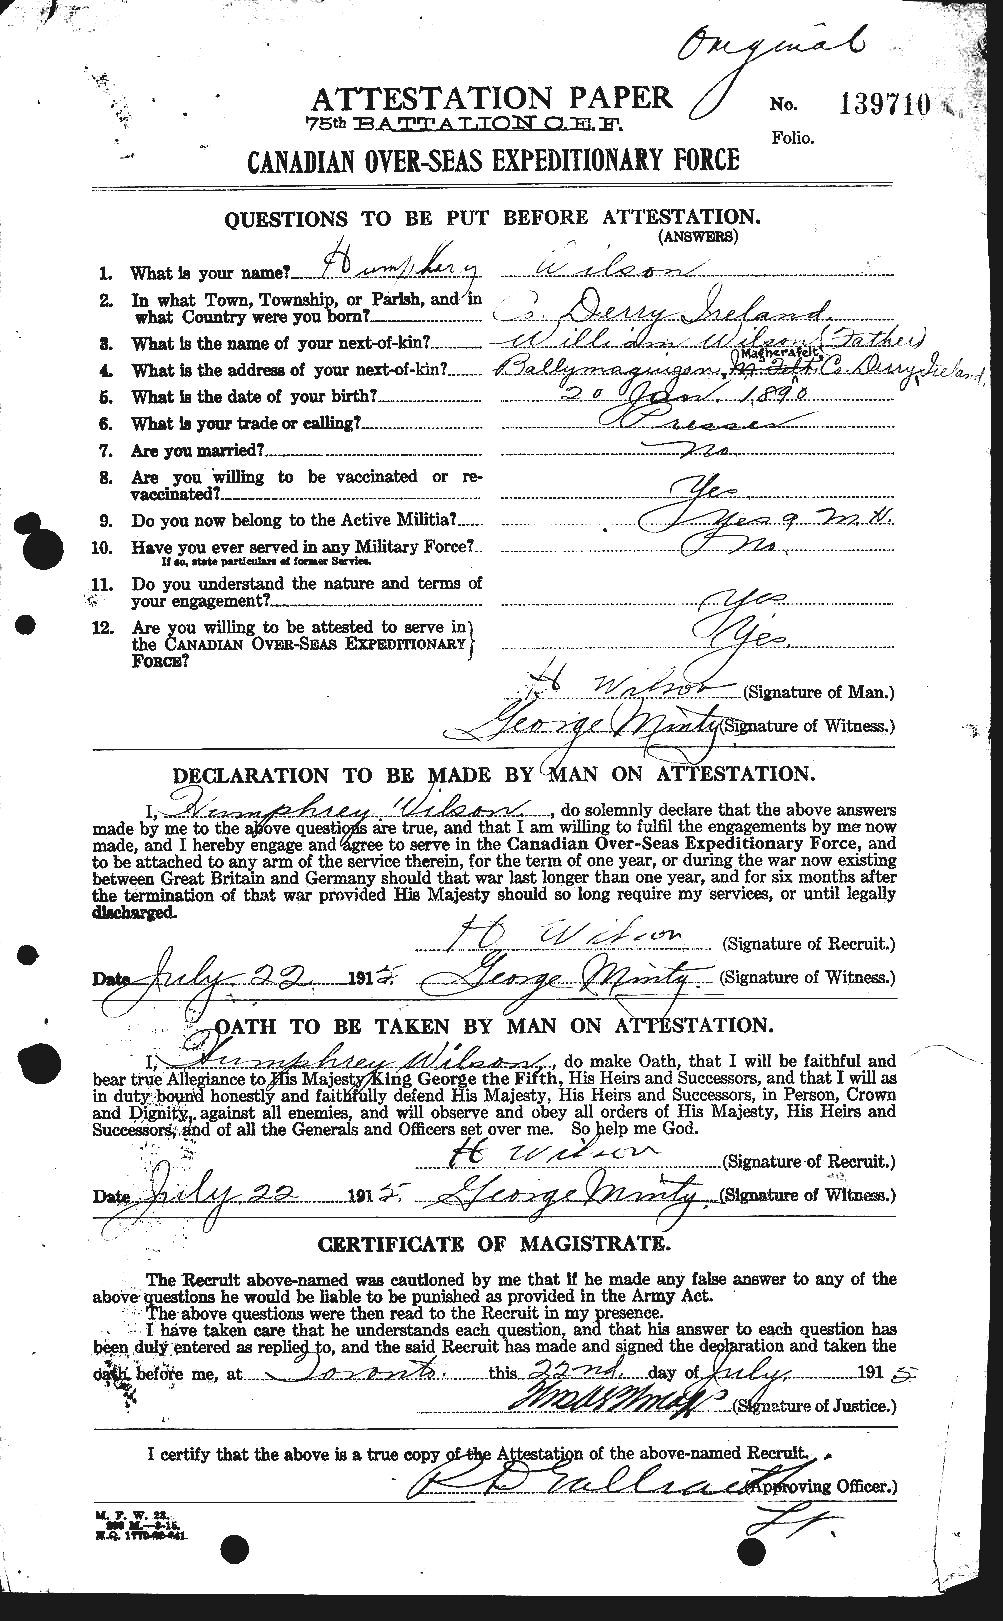 Dossiers du Personnel de la Première Guerre mondiale - CEC 679620a